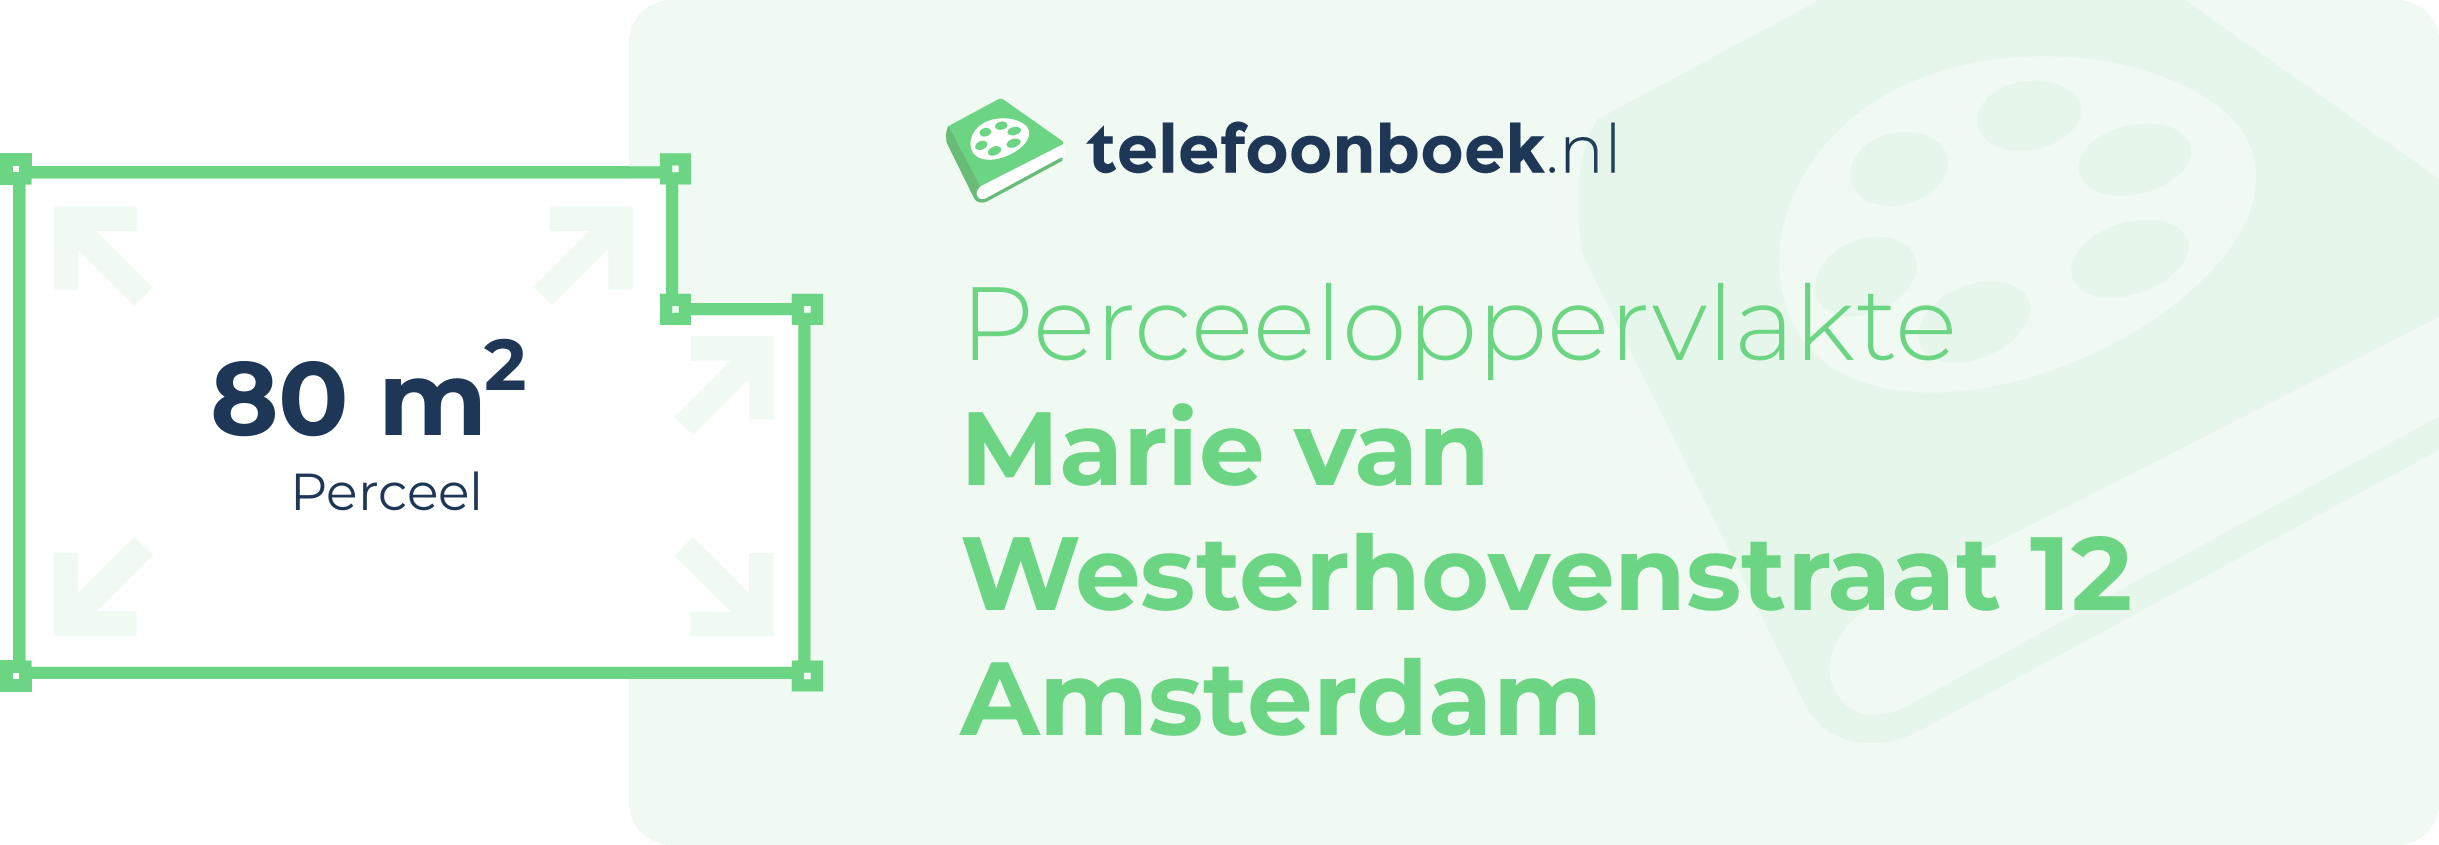 Perceeloppervlakte Marie Van Westerhovenstraat 12 Amsterdam